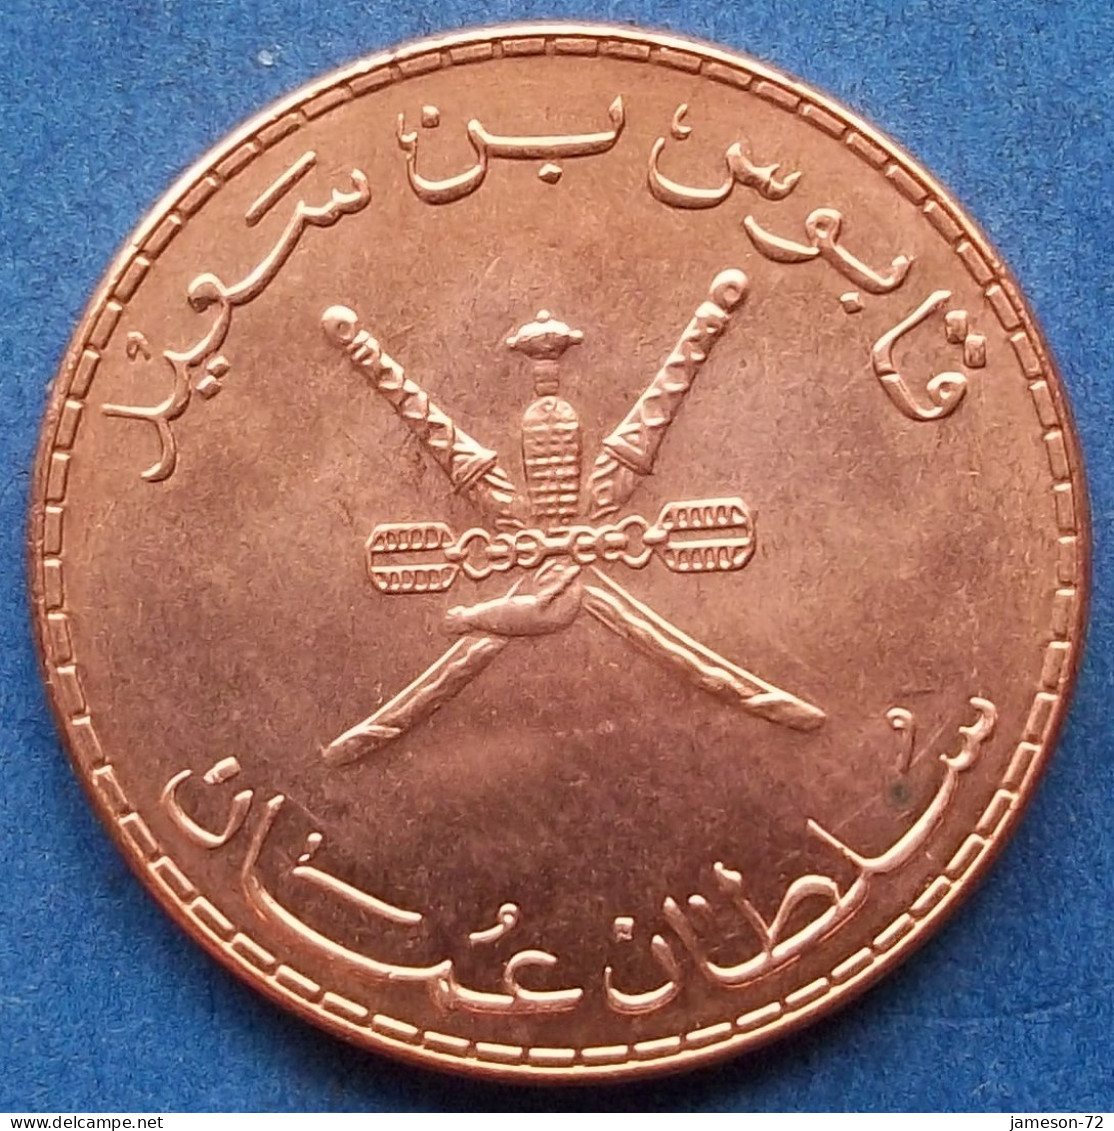 OMAN - 10 Baisa AH1432 2011AD KM# 151 Sultan Quabus Bin Sa'id Reform Coinage (AH1392 / 1972) - Edelweiss Coins - Oman